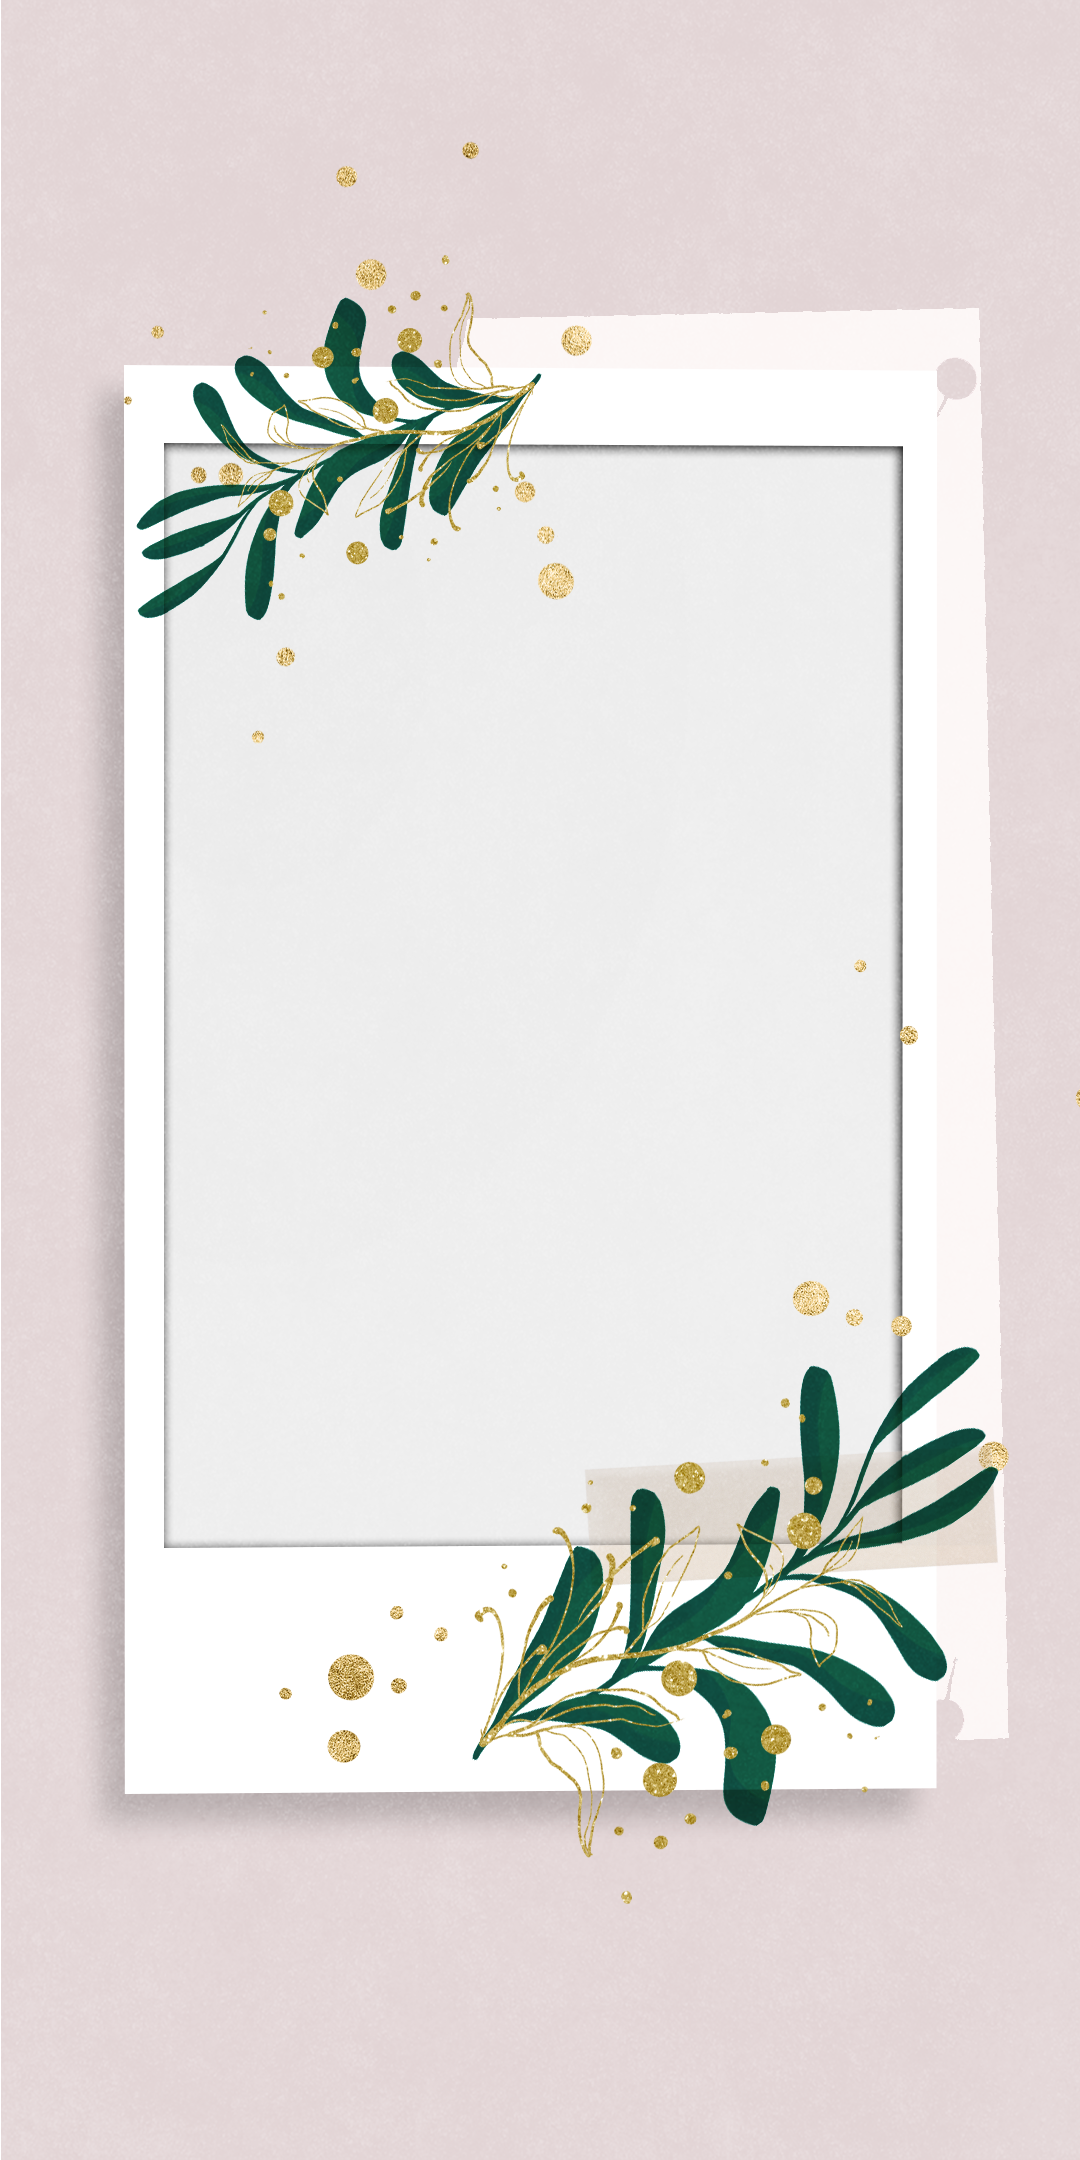 粉色淡雅宝丽来相纸金箔植物手机壁纸背景图片